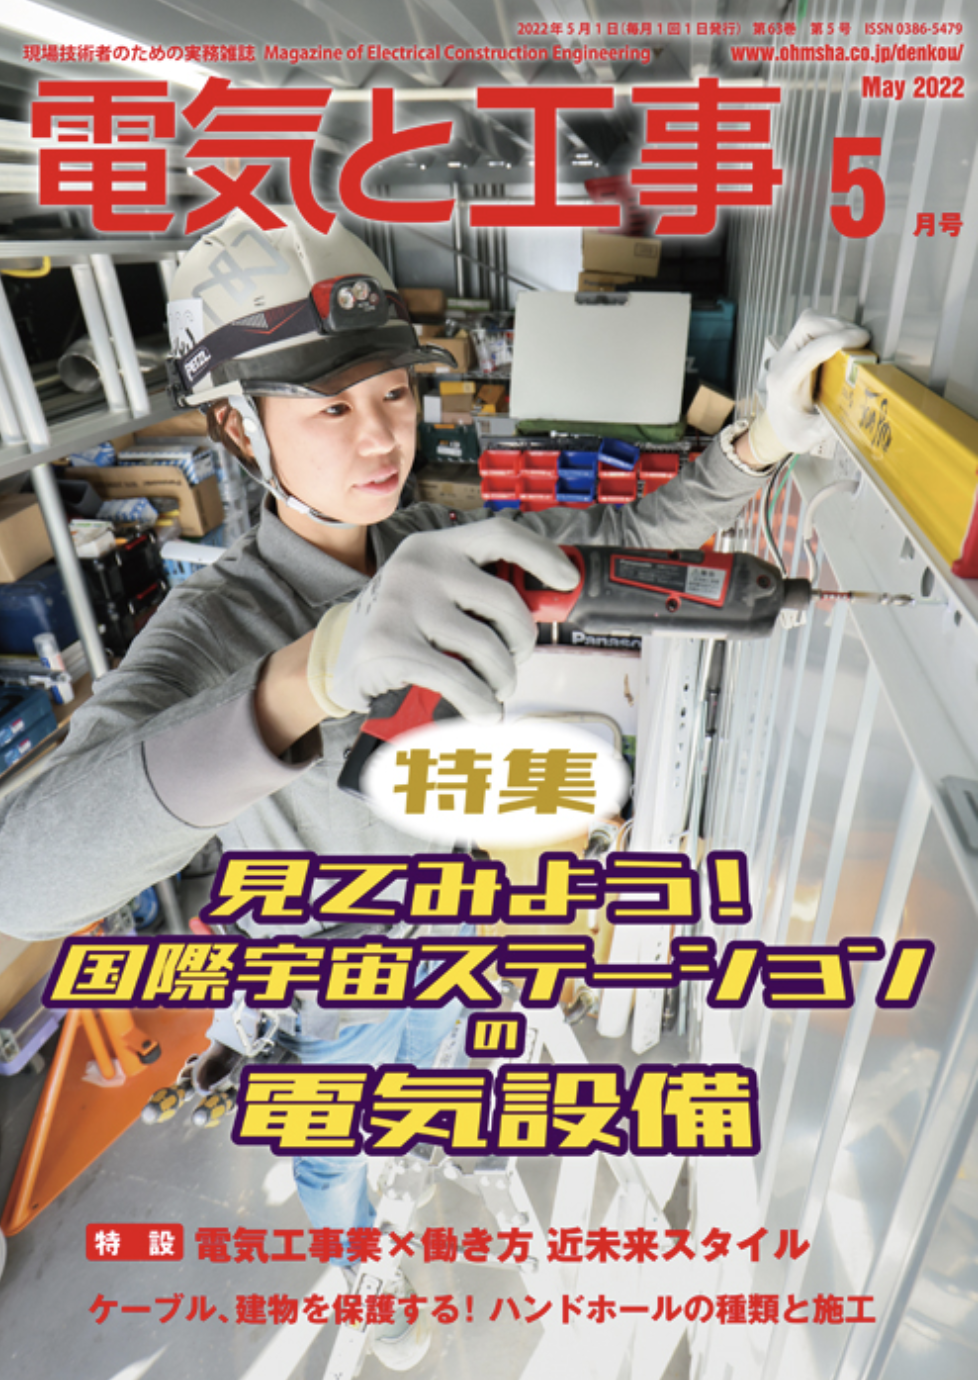 【新刊トピックス 2022年4月】電気と工事 2022年5月号 (第63巻第5号通巻825号)の画像